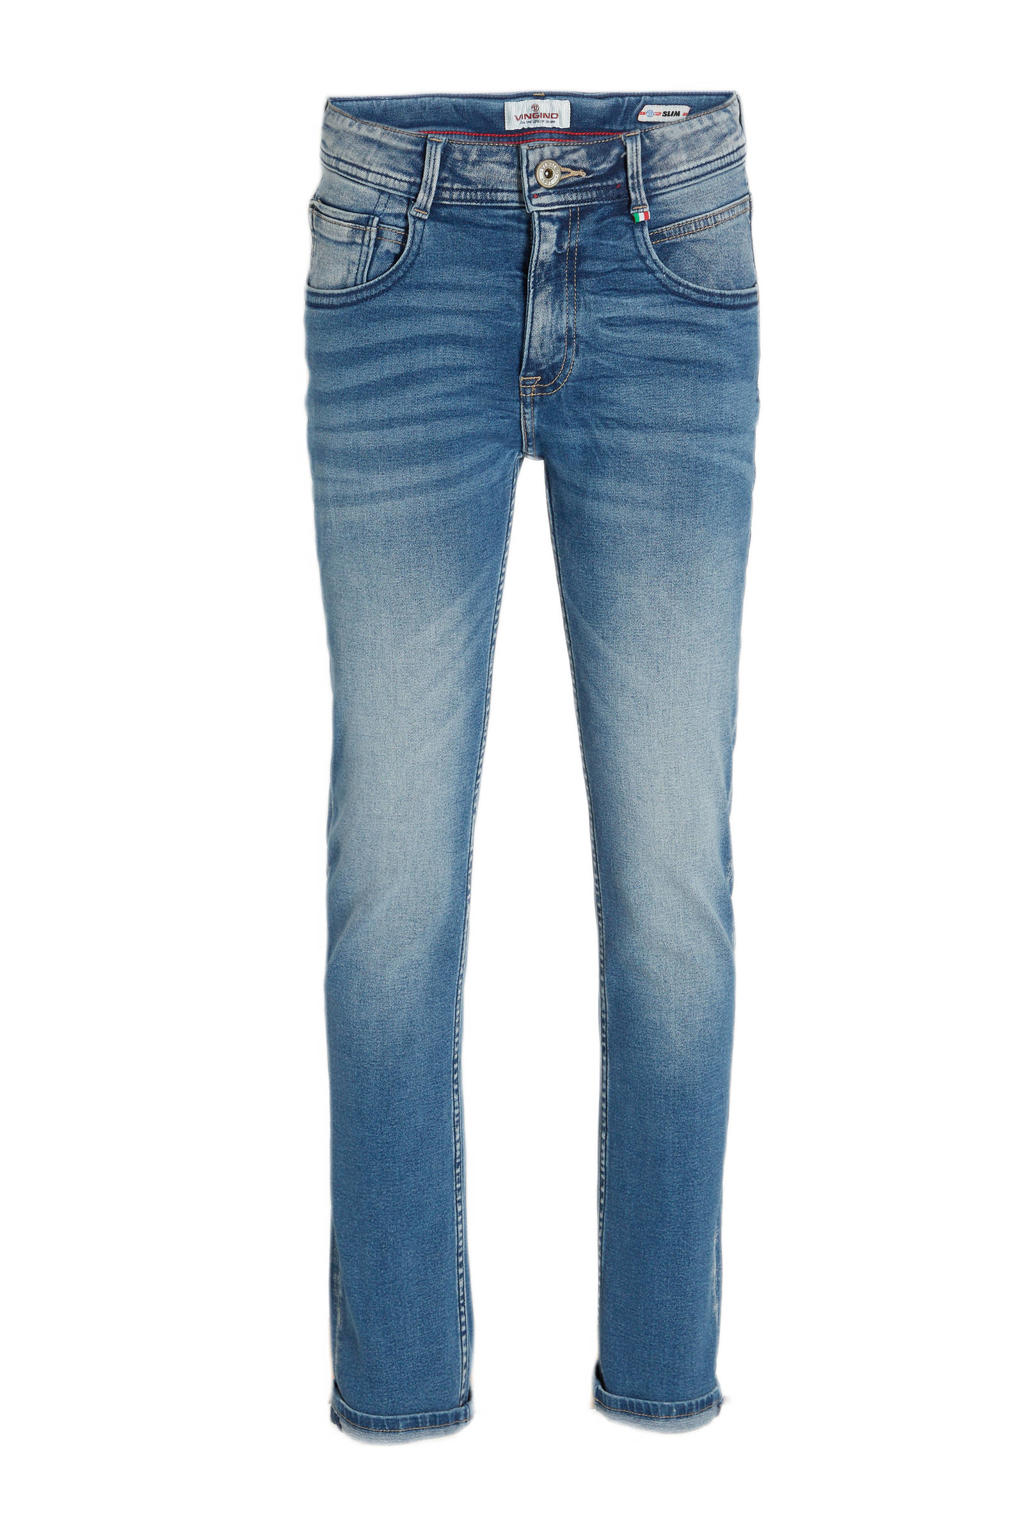 Blauwe jongens Vingino slim fit jeans van stretchkatoen met regular waist